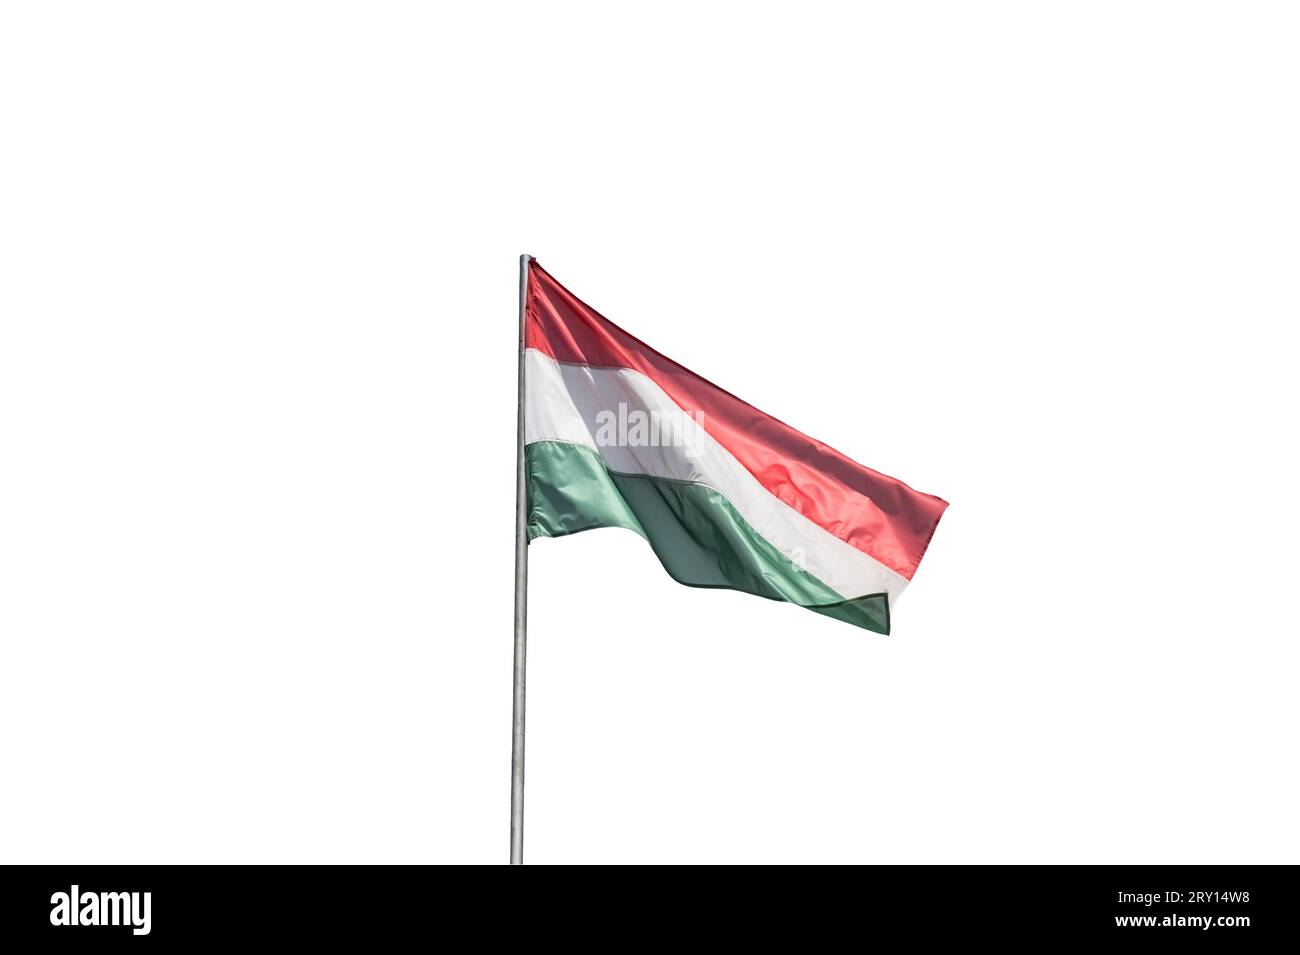 Vista la bandiera ungherese che ondeggia con un cielo nuvoloso sullo sfondo Foto Stock